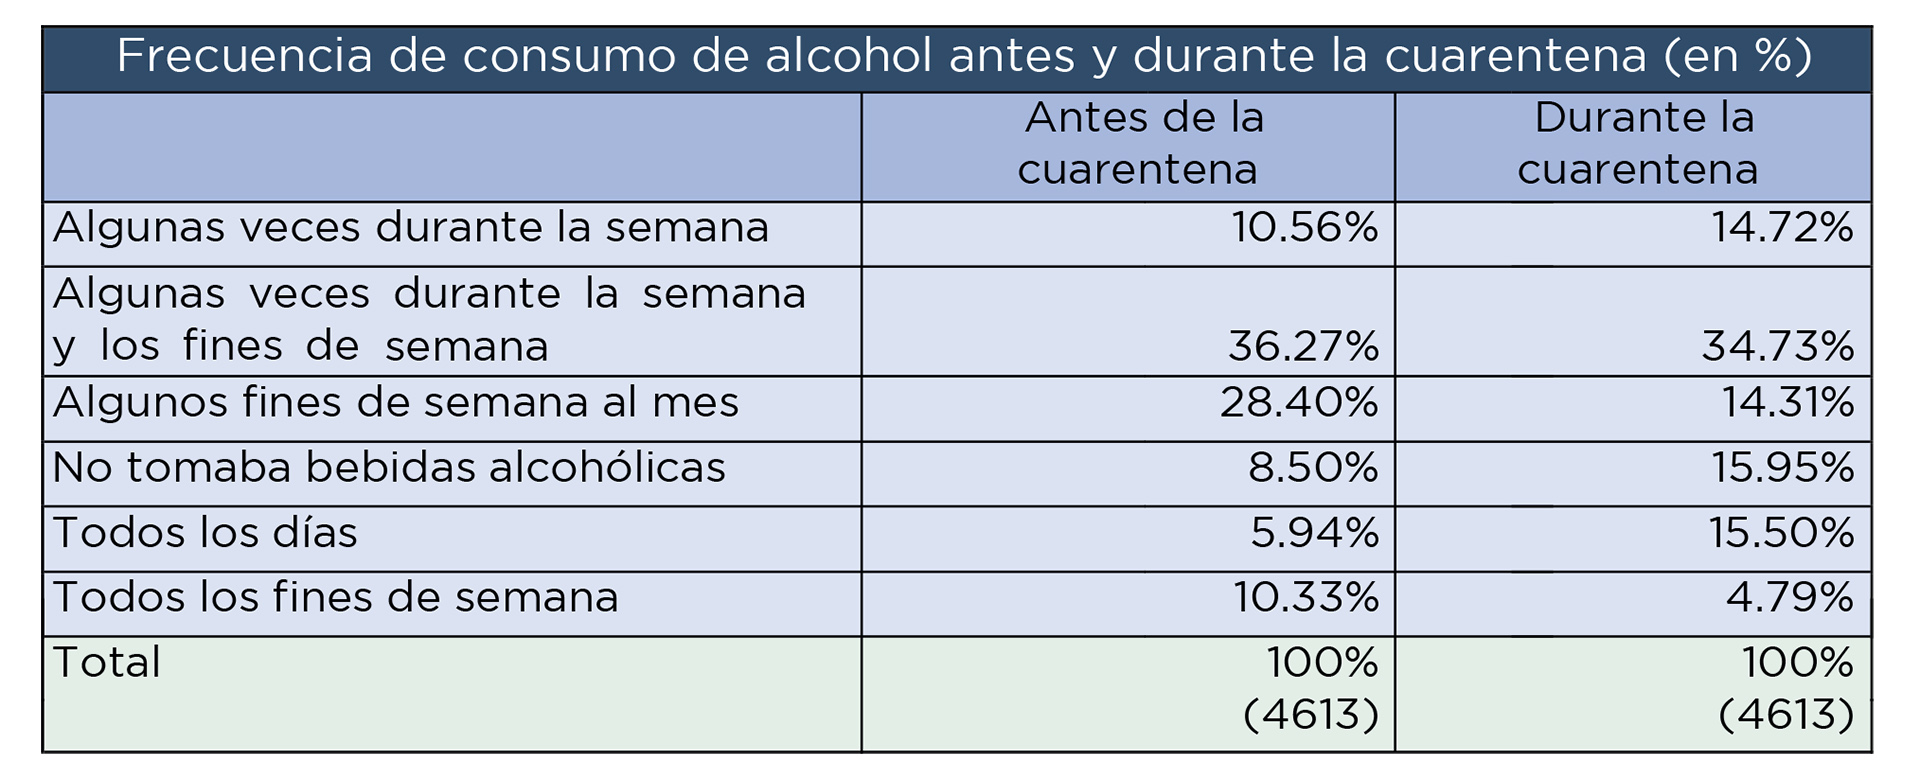 Fuente: Área de Salud y Población del Instituto de Investigaciones Gino Germani (Facultad de Ciencias Sociales, Universidad de Buenos Aires)